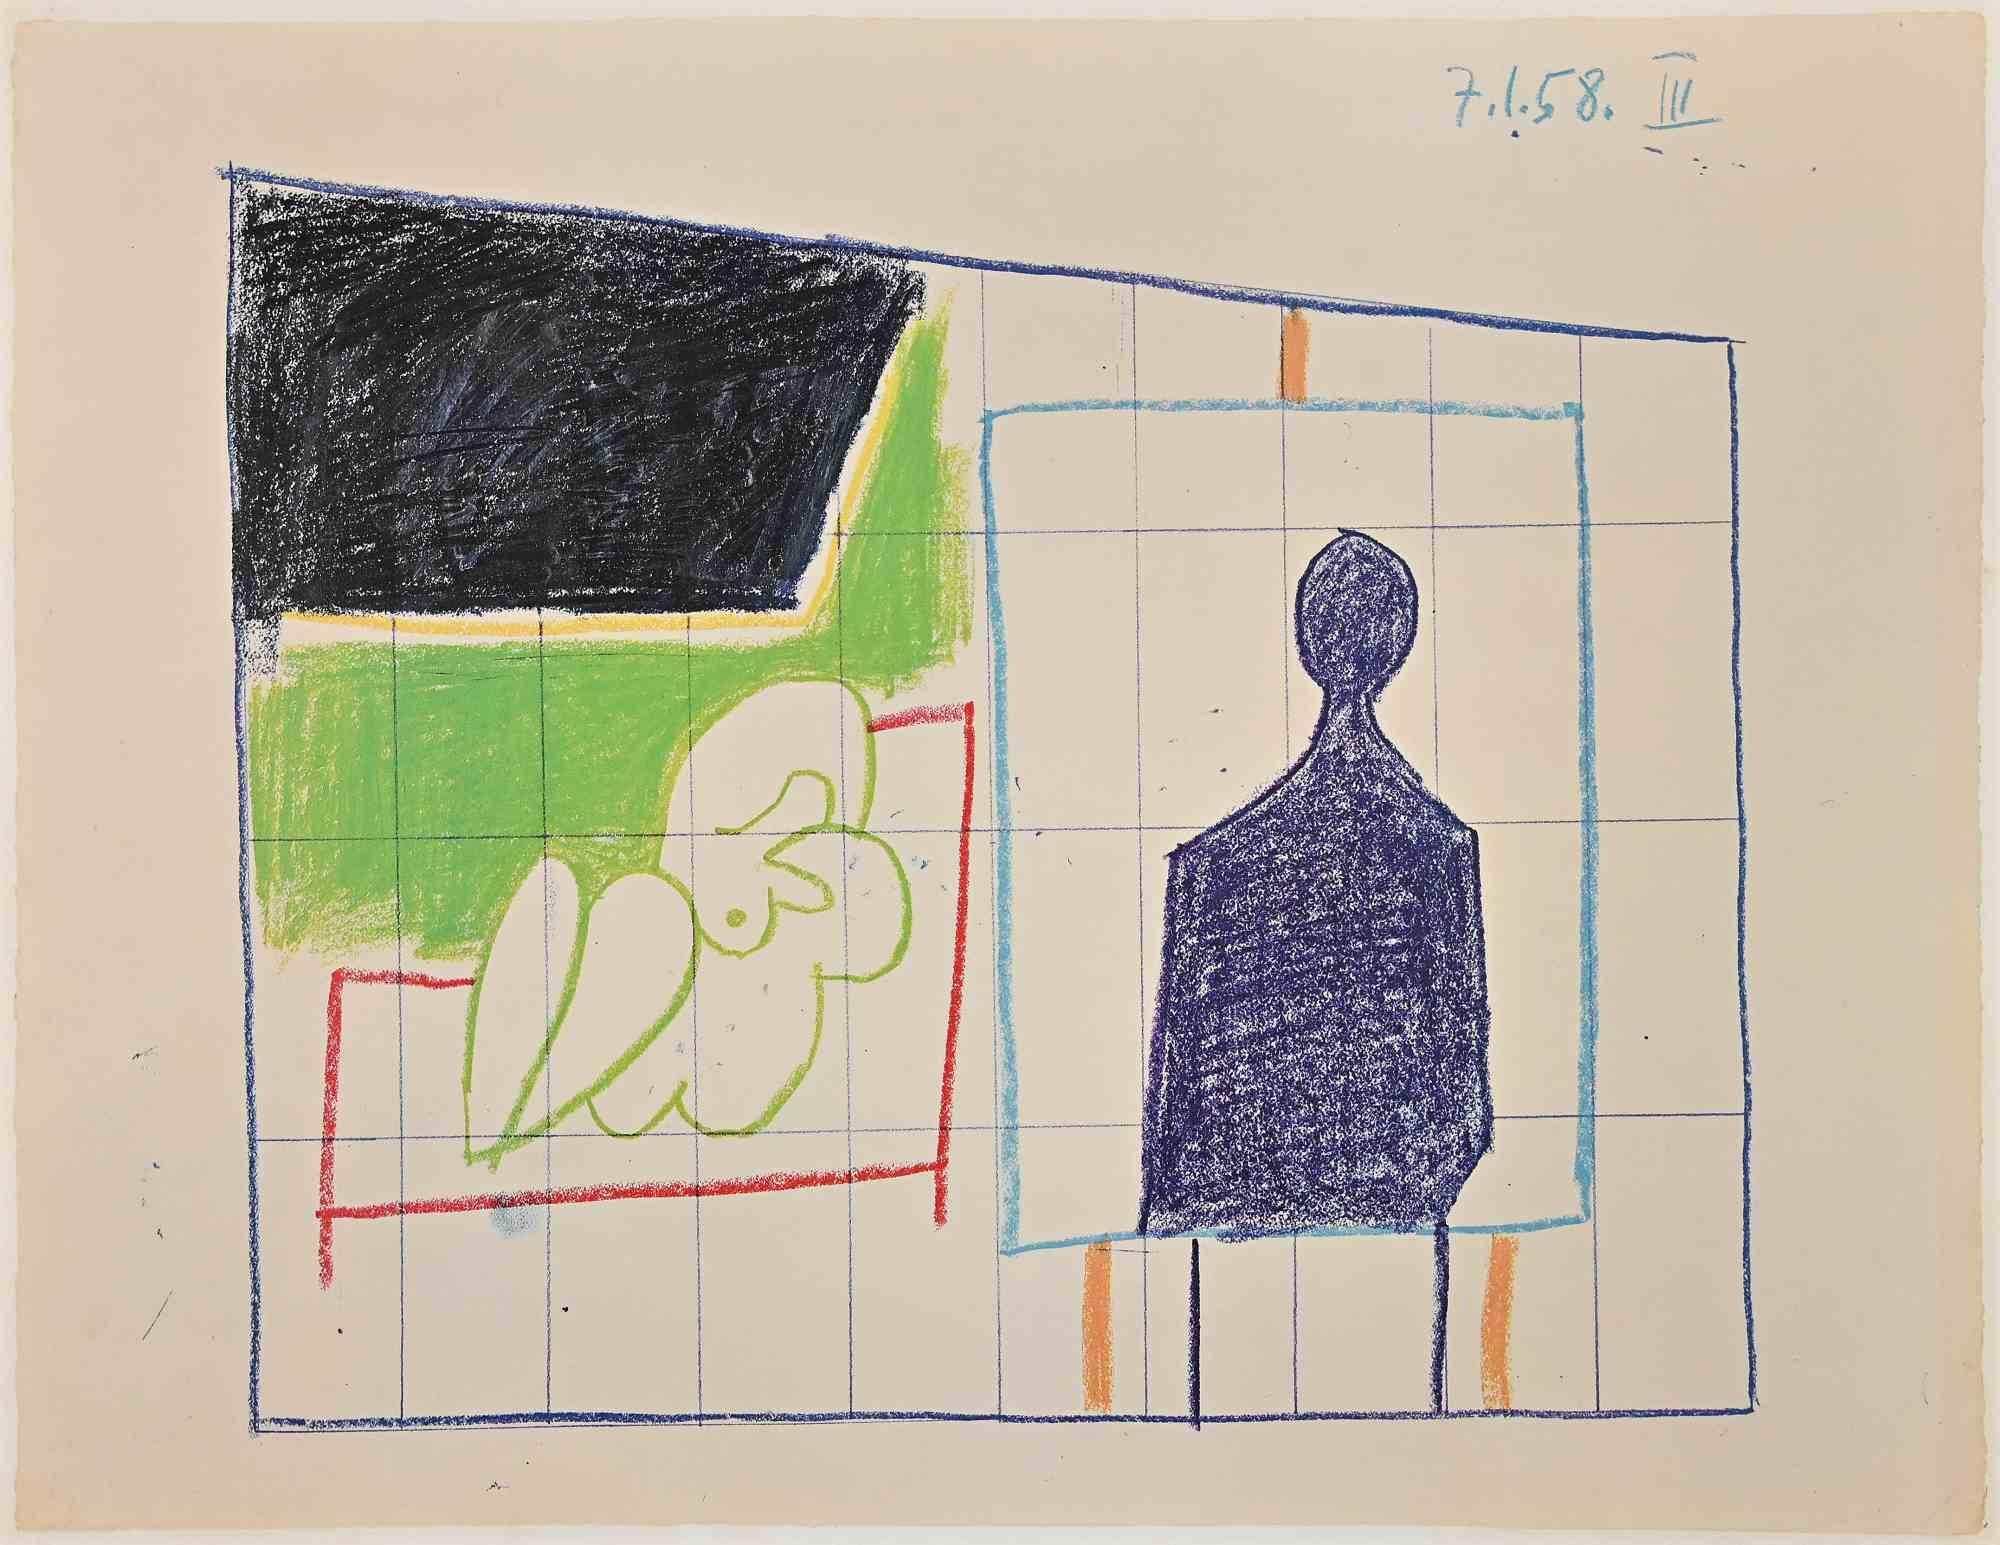 Der Sturz des Ikarus ist eine alte Fotolithografie, die 1958 nach Pablo Picasso entstand.

Originaltitel: "La Chute d'Icare"

Es wurde für die "Dekoration des Foyer des délégués, Unesco-Palast in Paris: Serie von vorbereitenden Studien in Schwarz